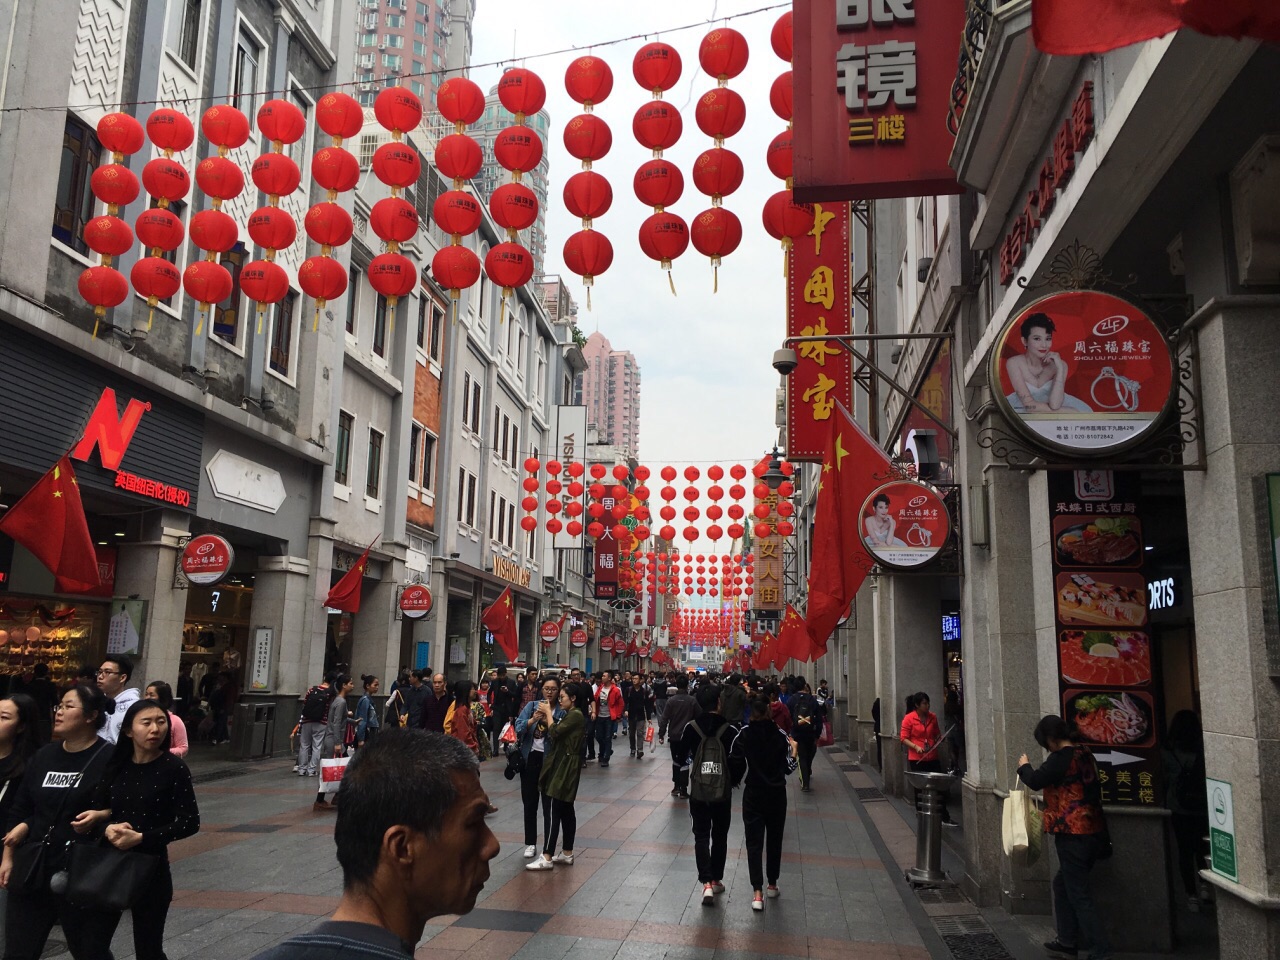 攻略】广州上下九步行街景点,广州的老牌商业街了,分为三段:上下路,下